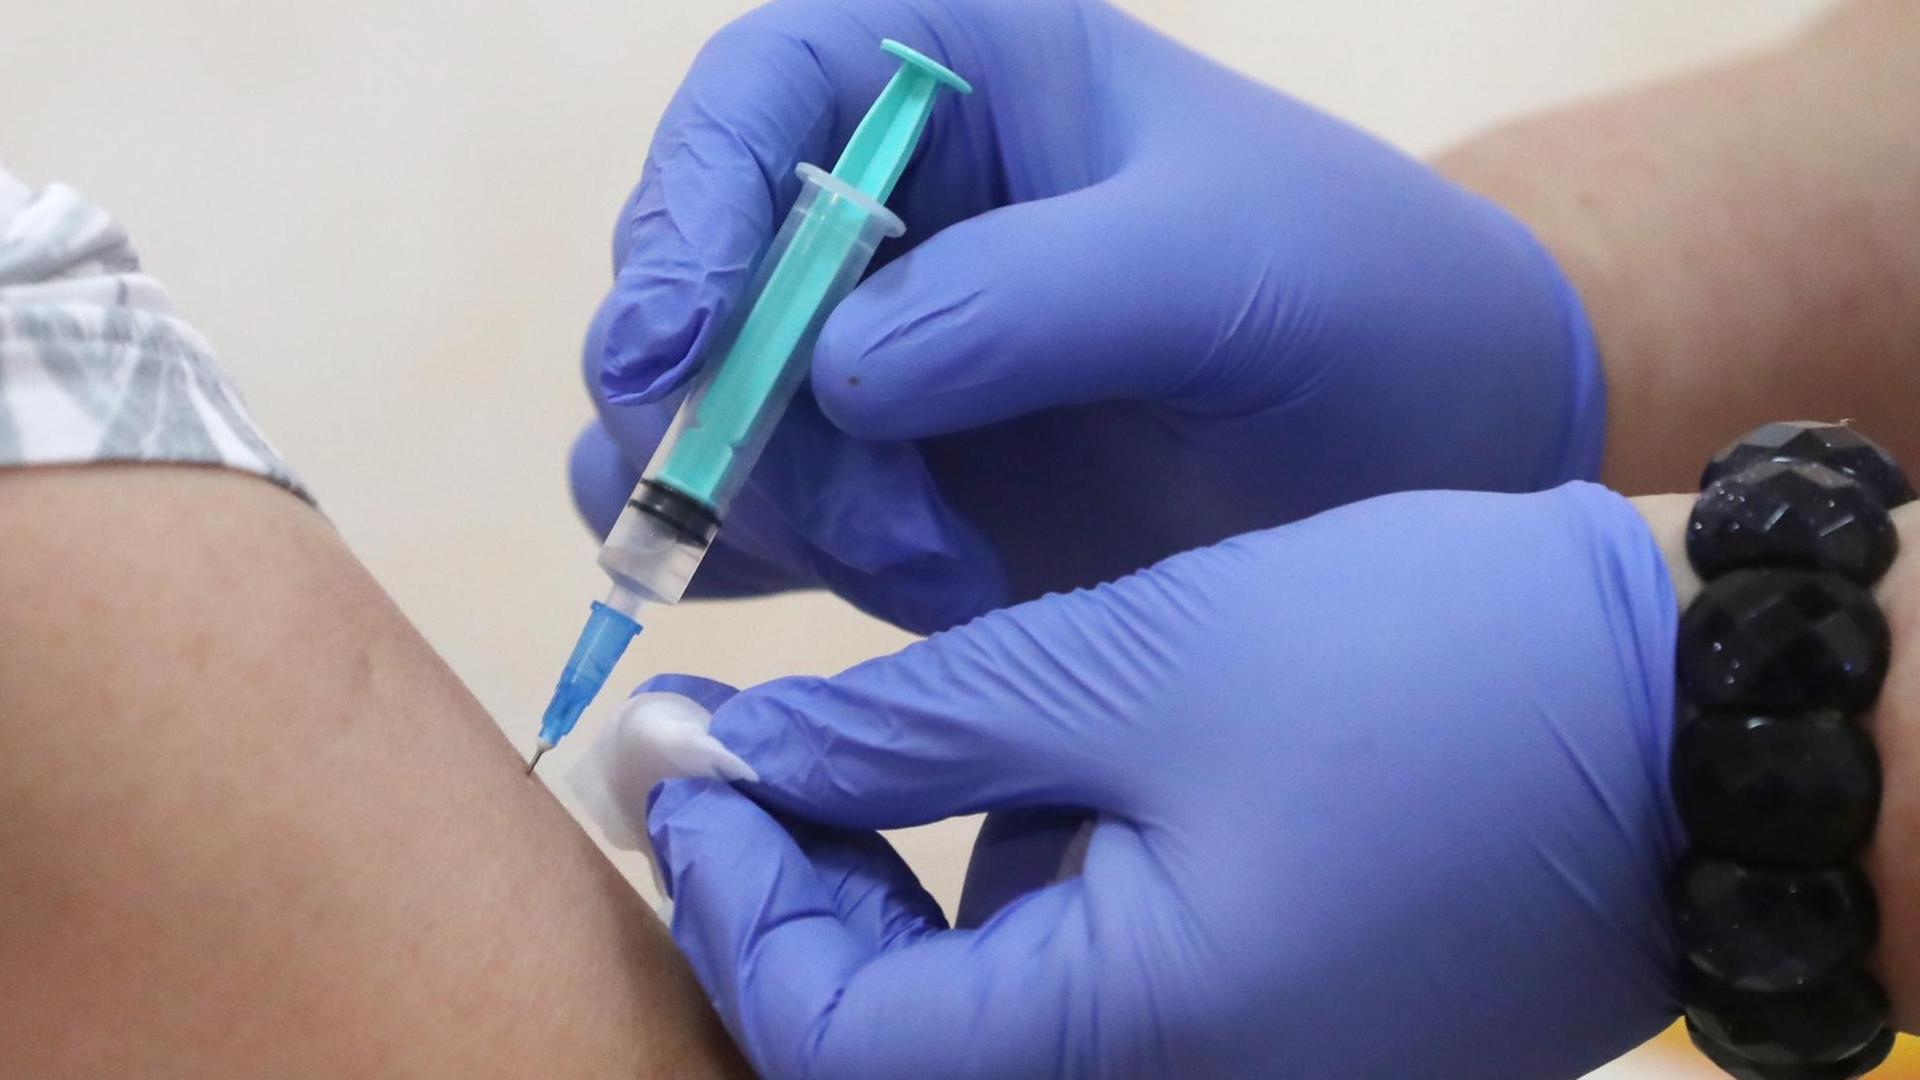 Impfung: Hände in blauen Schutzhandschuhen halten eine Spritze und einen Tupfer